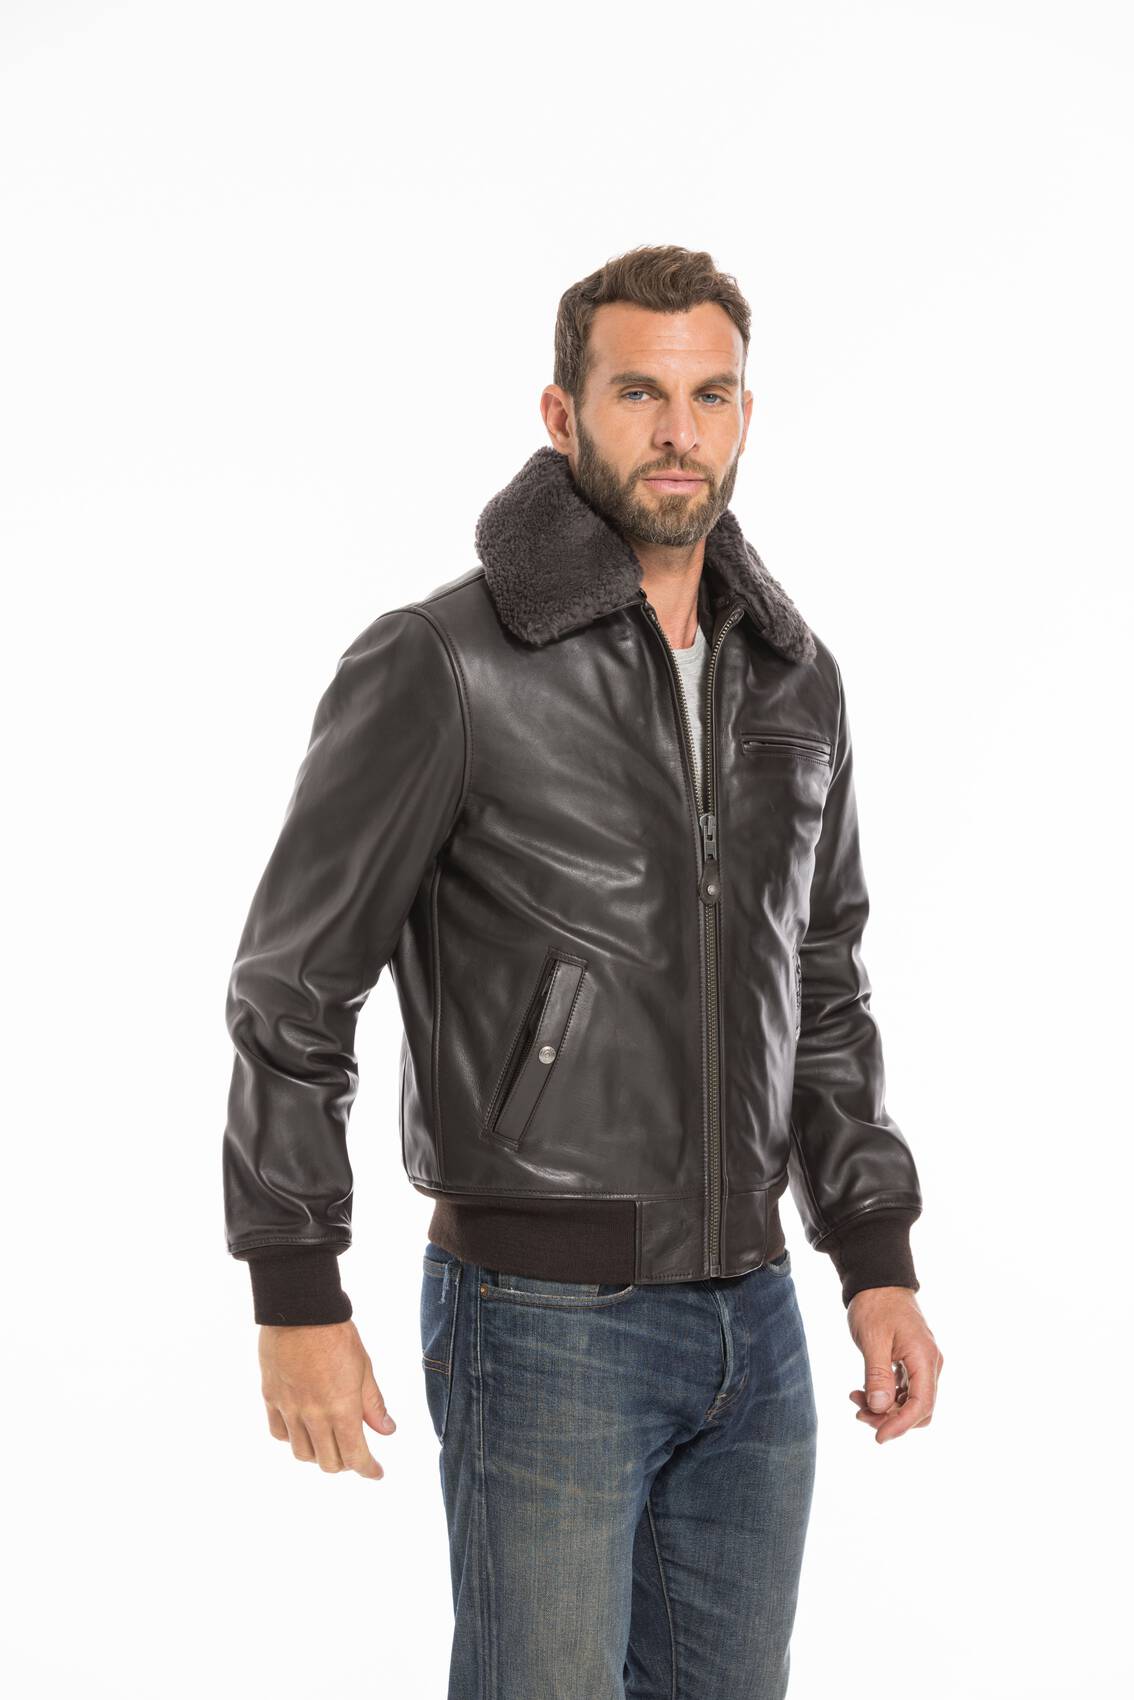 chaqueta de cuero SCHOTT en cuir piel de becerro-ref LC 1380 marron-marron  oscuro